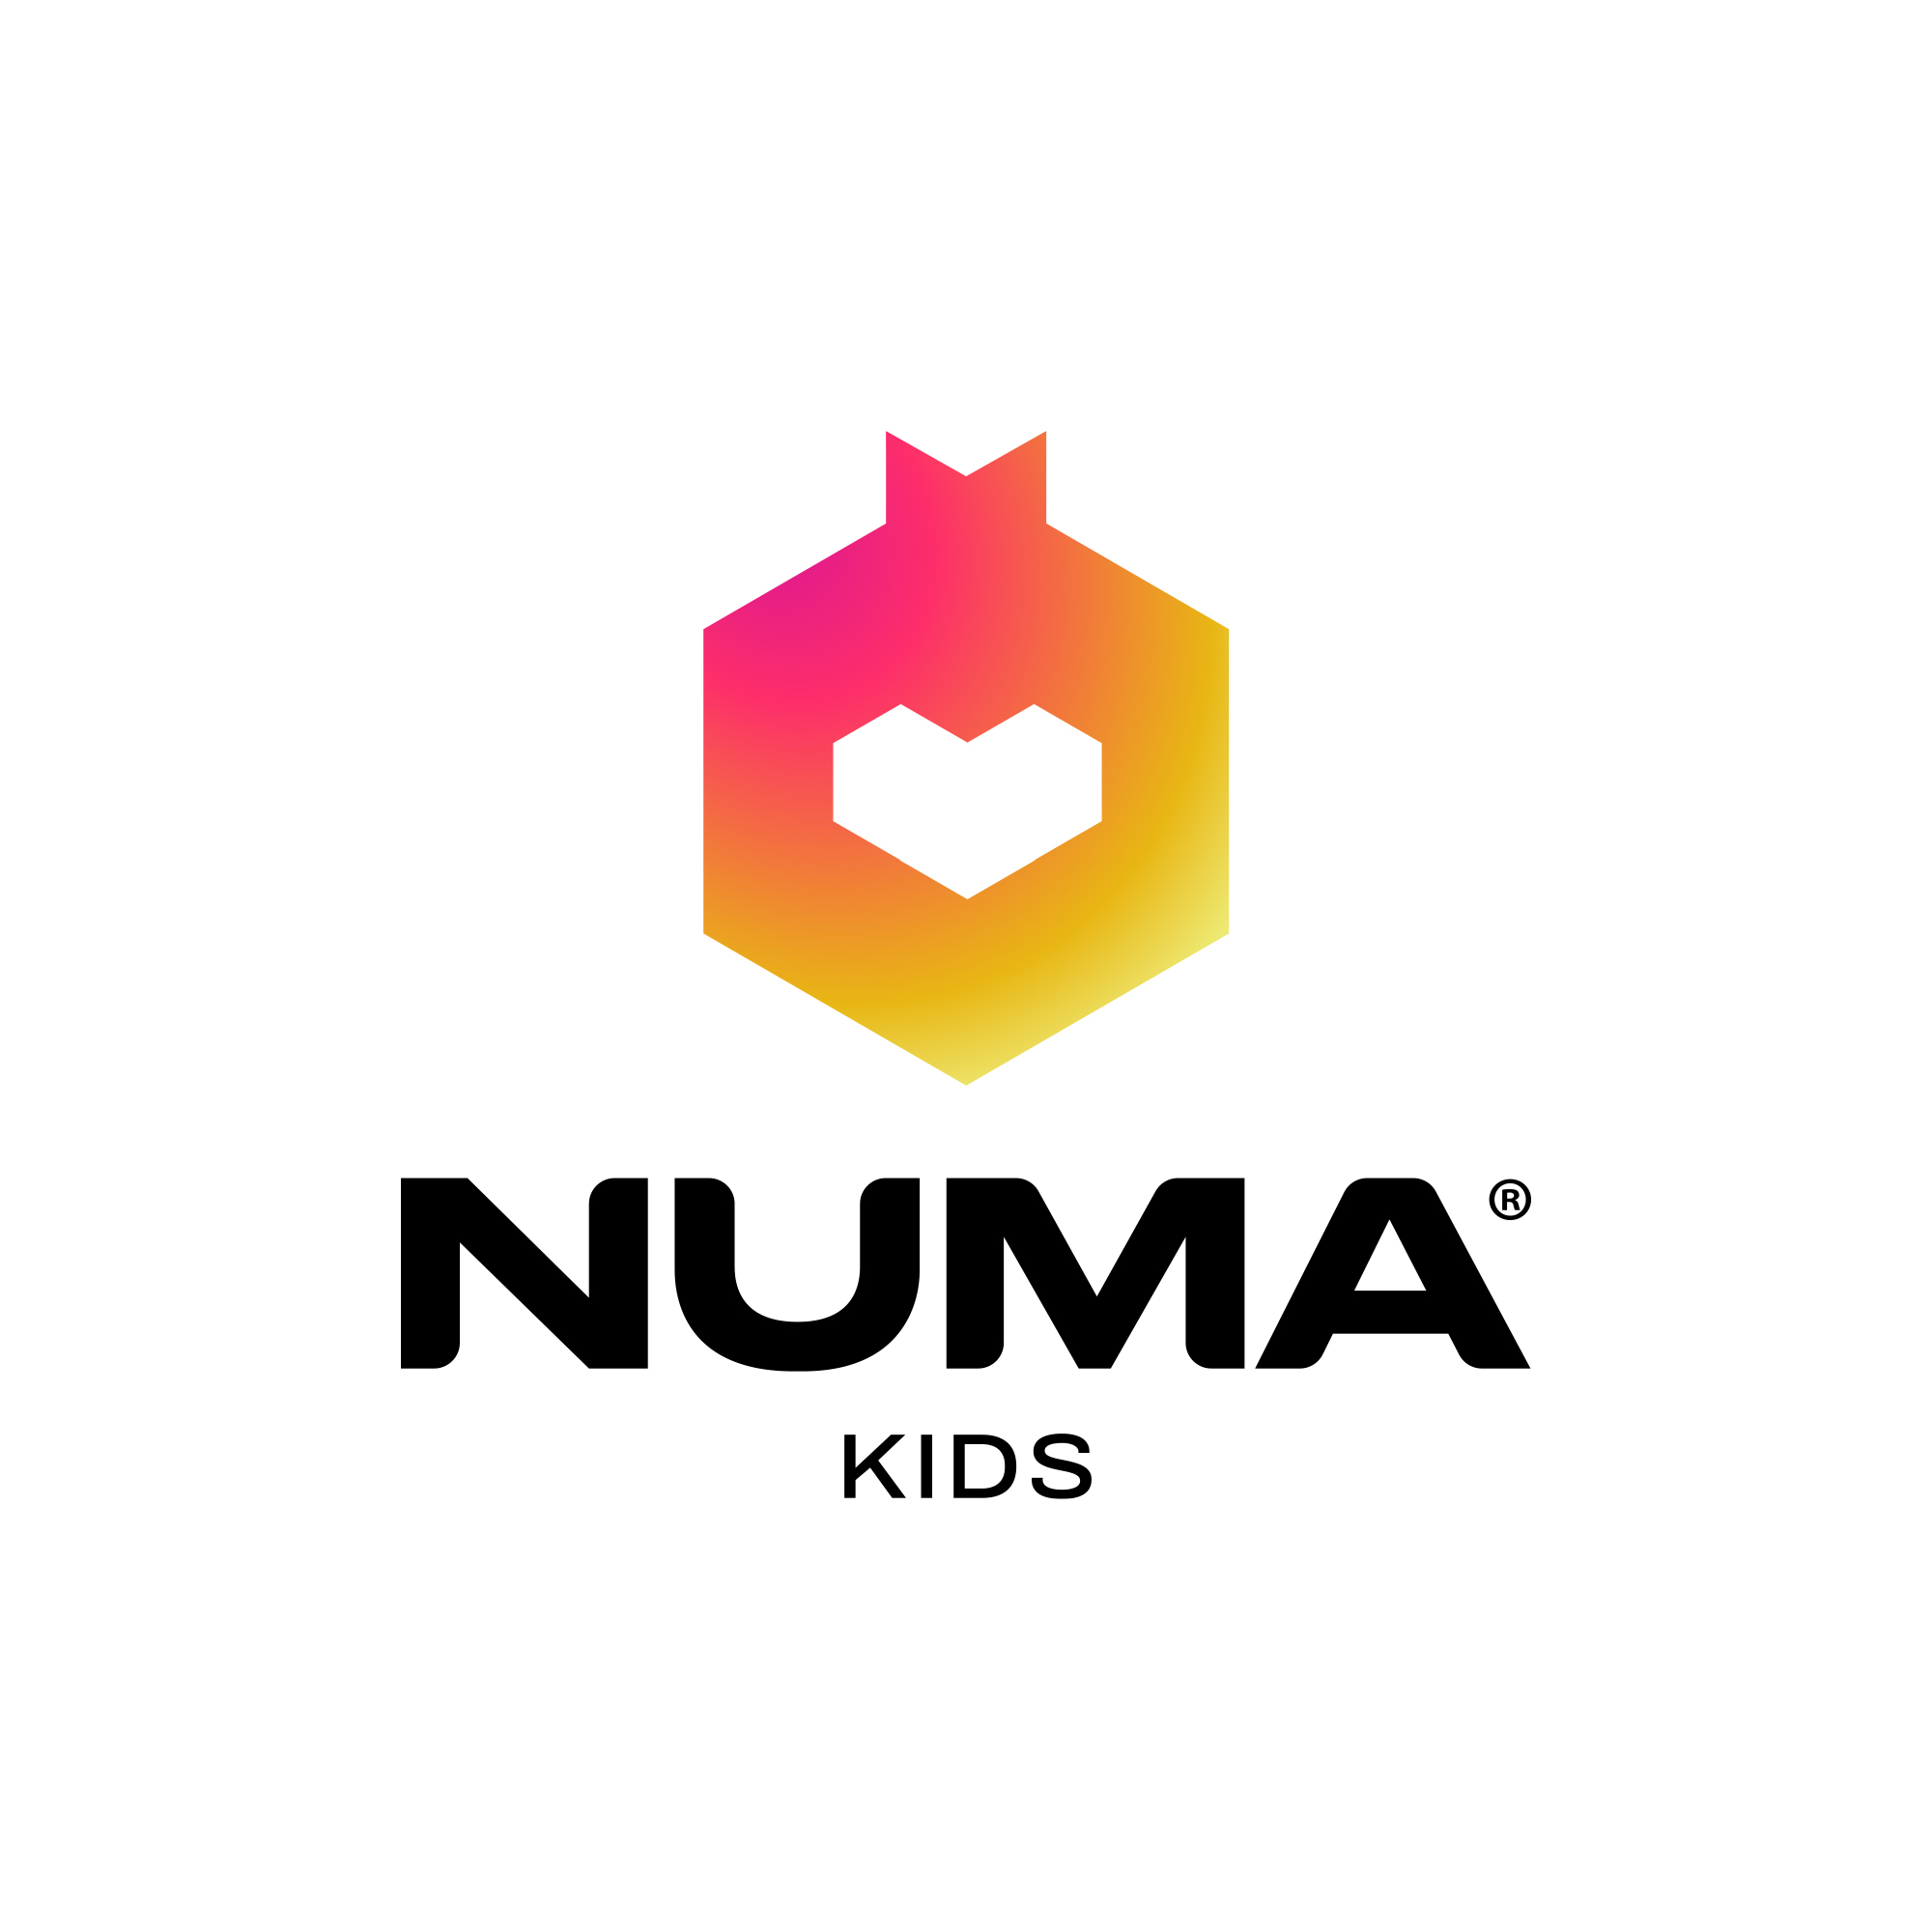 Numa Kids